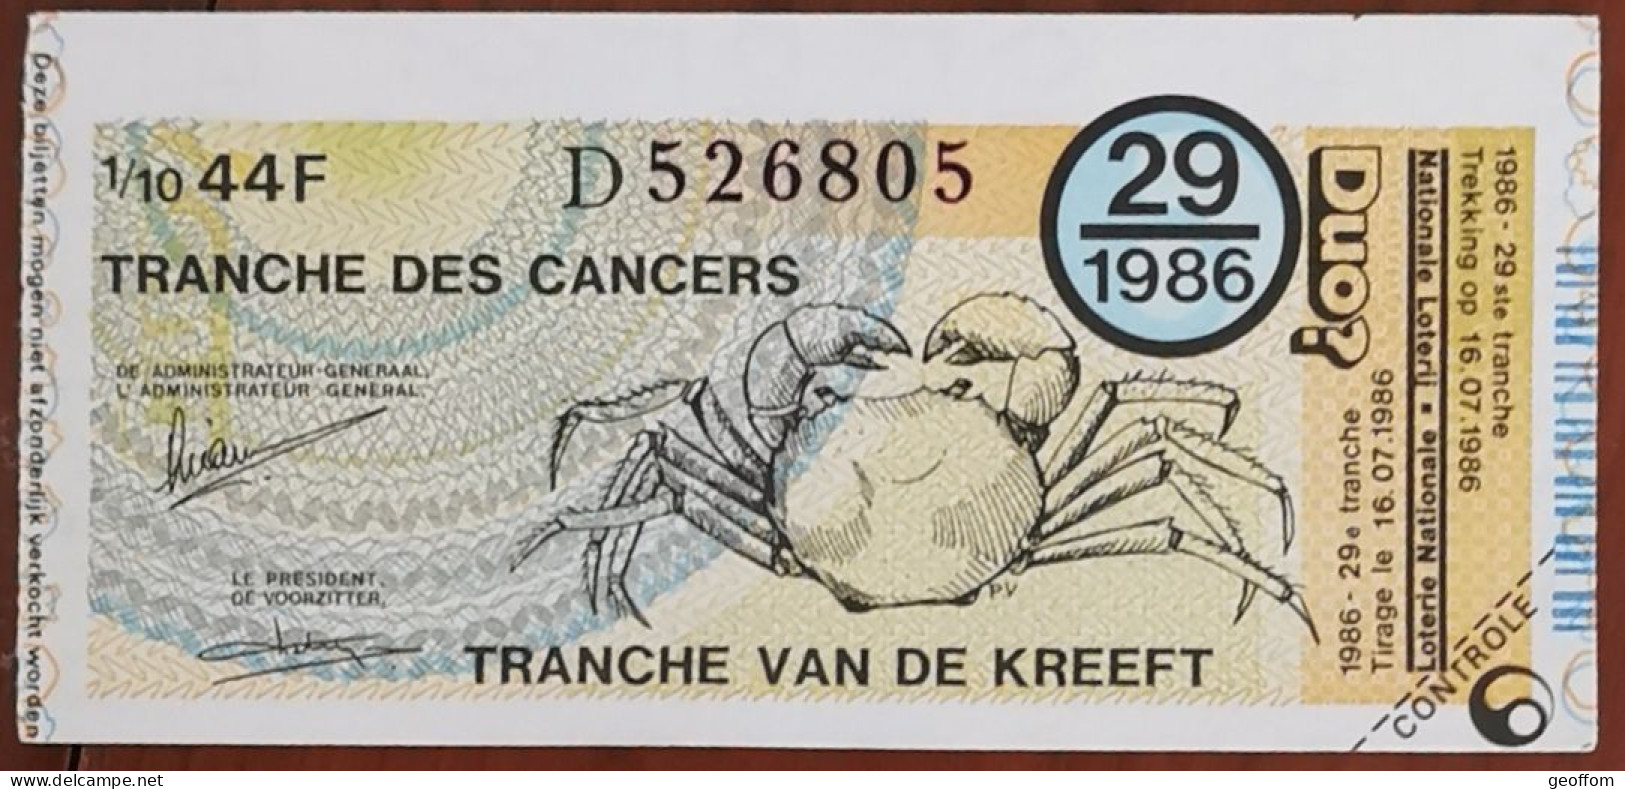 Billet De Loterie Nationale Belgique 1986 29e Tranche Des Cancers - 16-7-1986 - Biglietti Della Lotteria